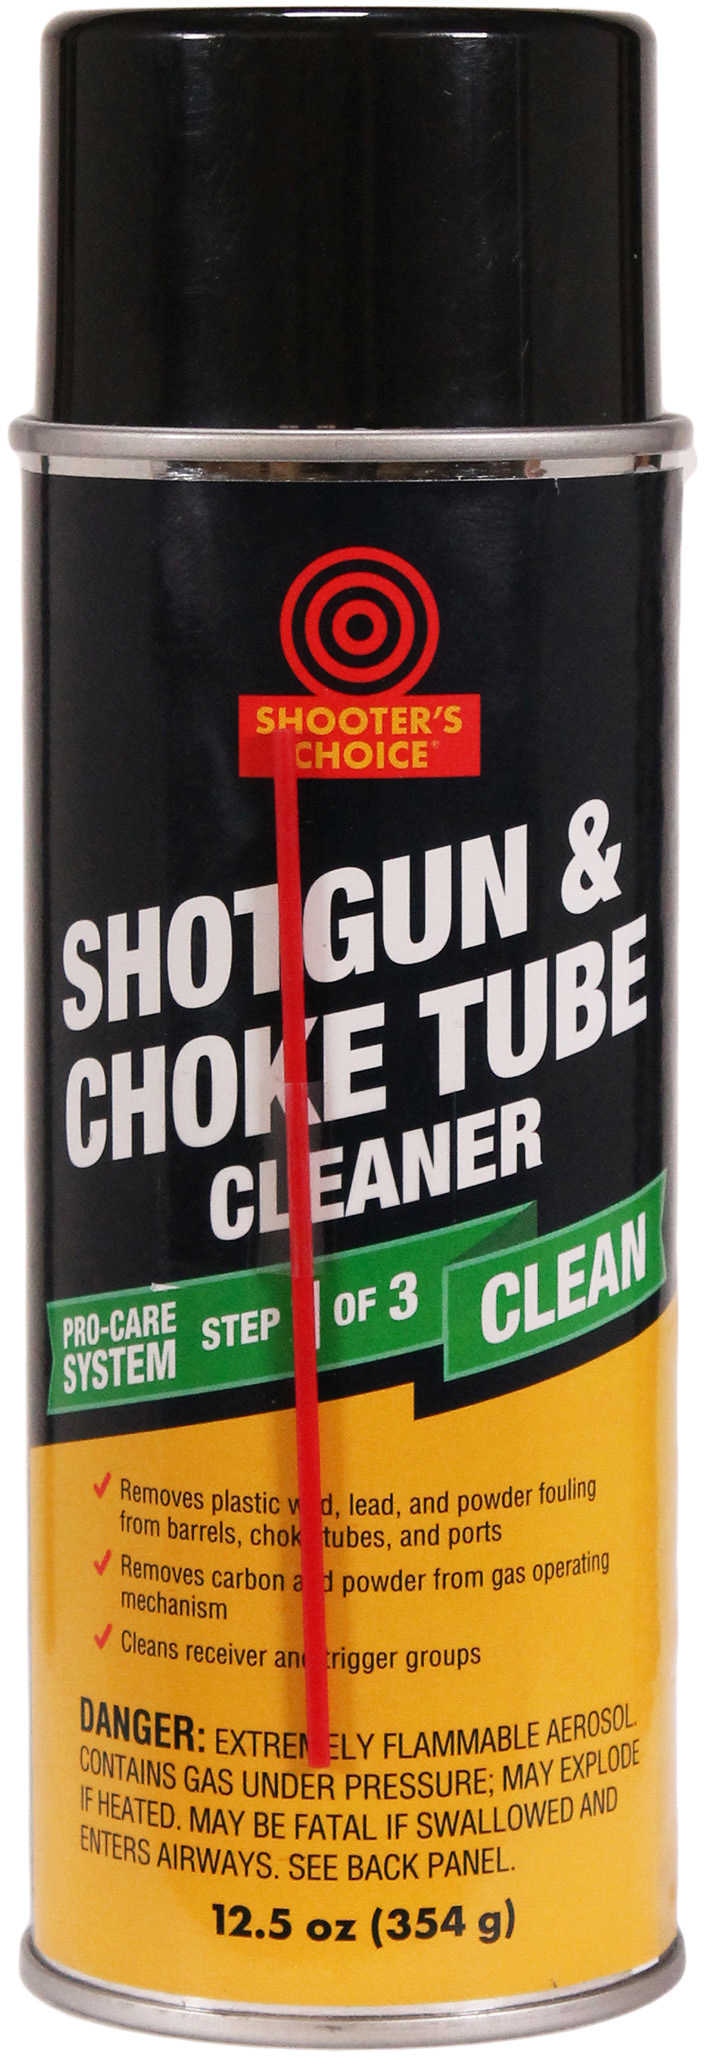 Shooters Choice Shotgun & Choke Tube Cleaner 12 Oz AERSL